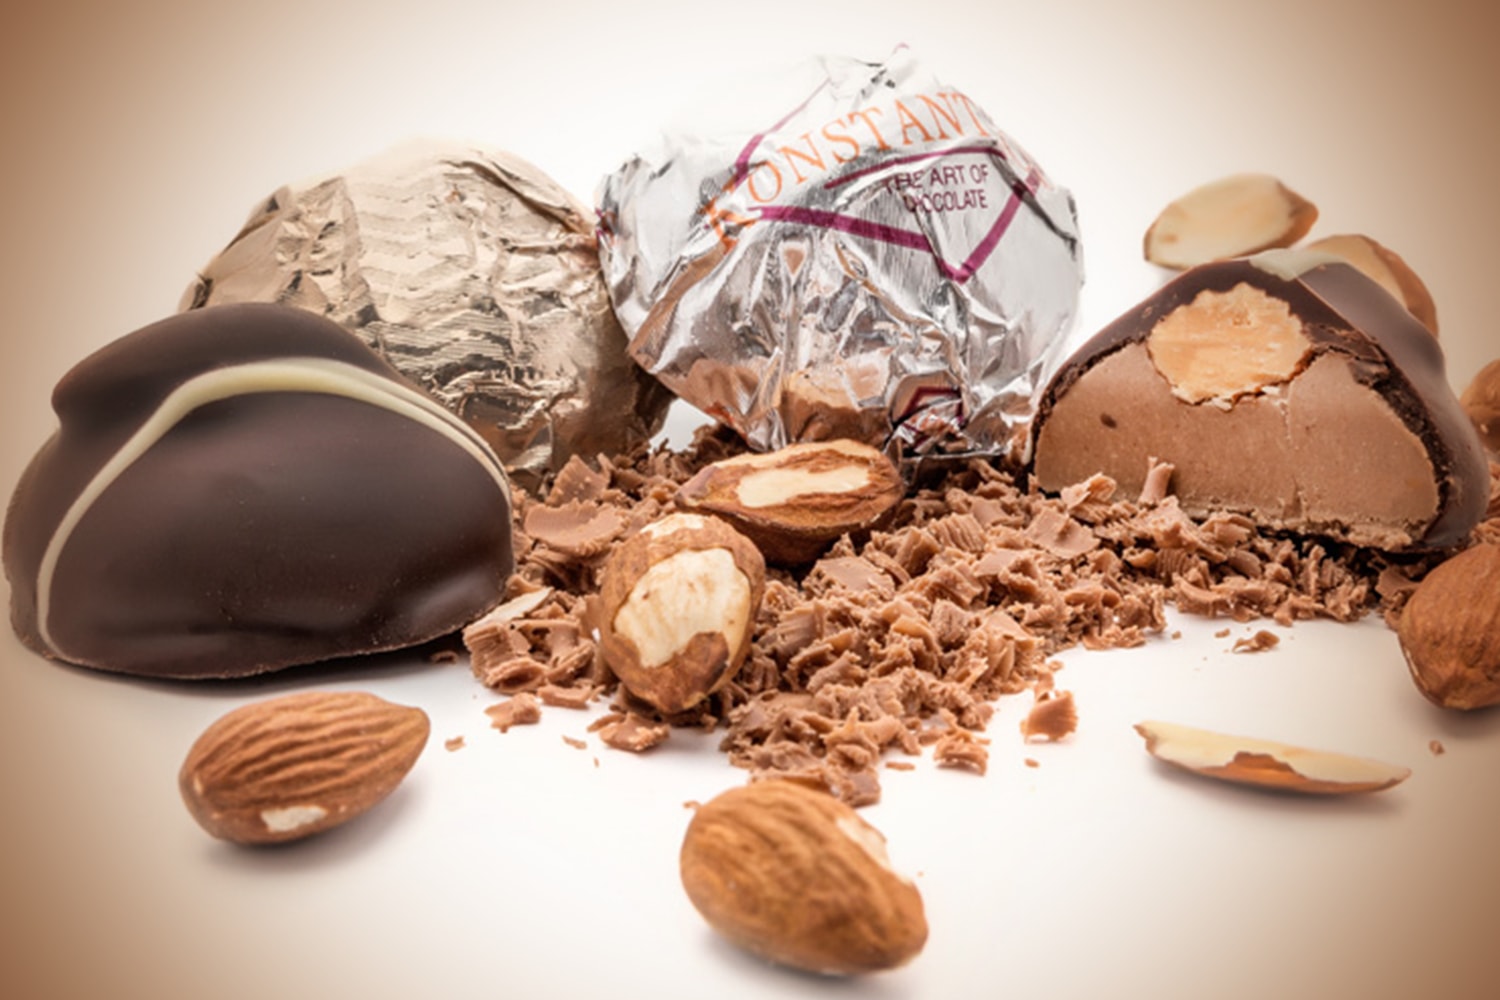 Σοκολατίνι αμυγδάλου - Almond confection